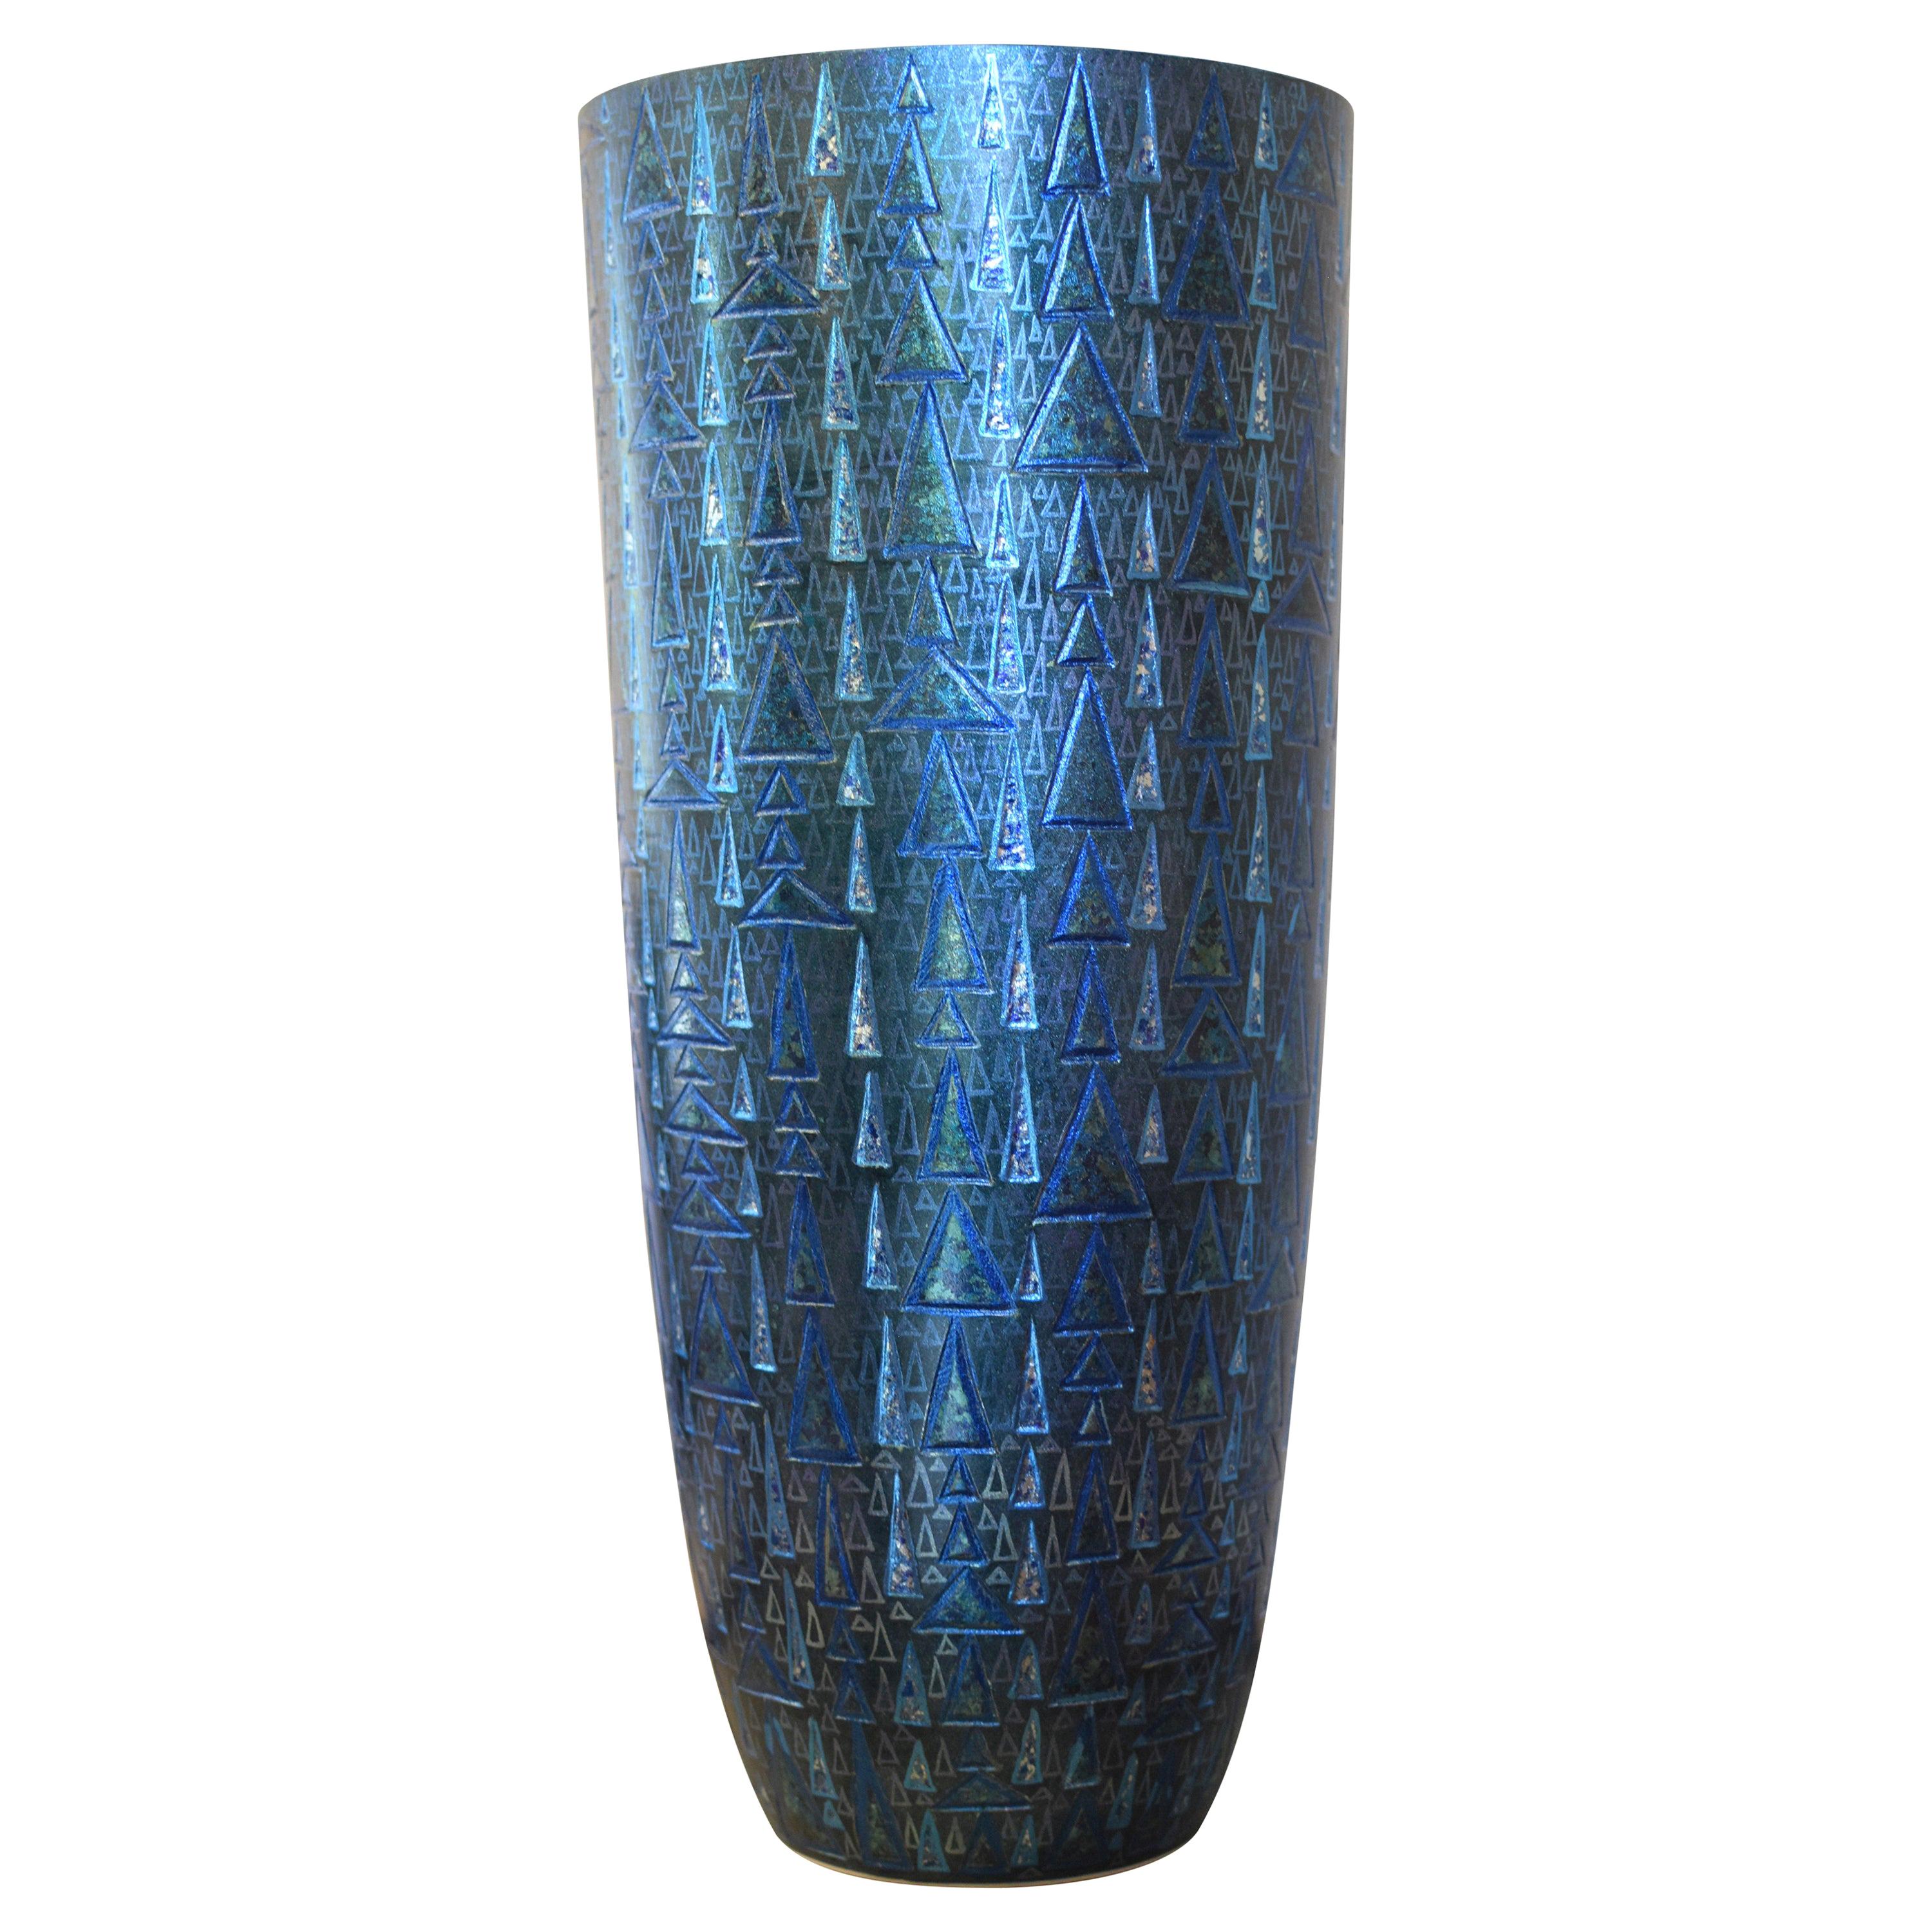 Zeitgenössische japanische Vase aus blauem Silber geätztem Porzellan von Meisterkünstler